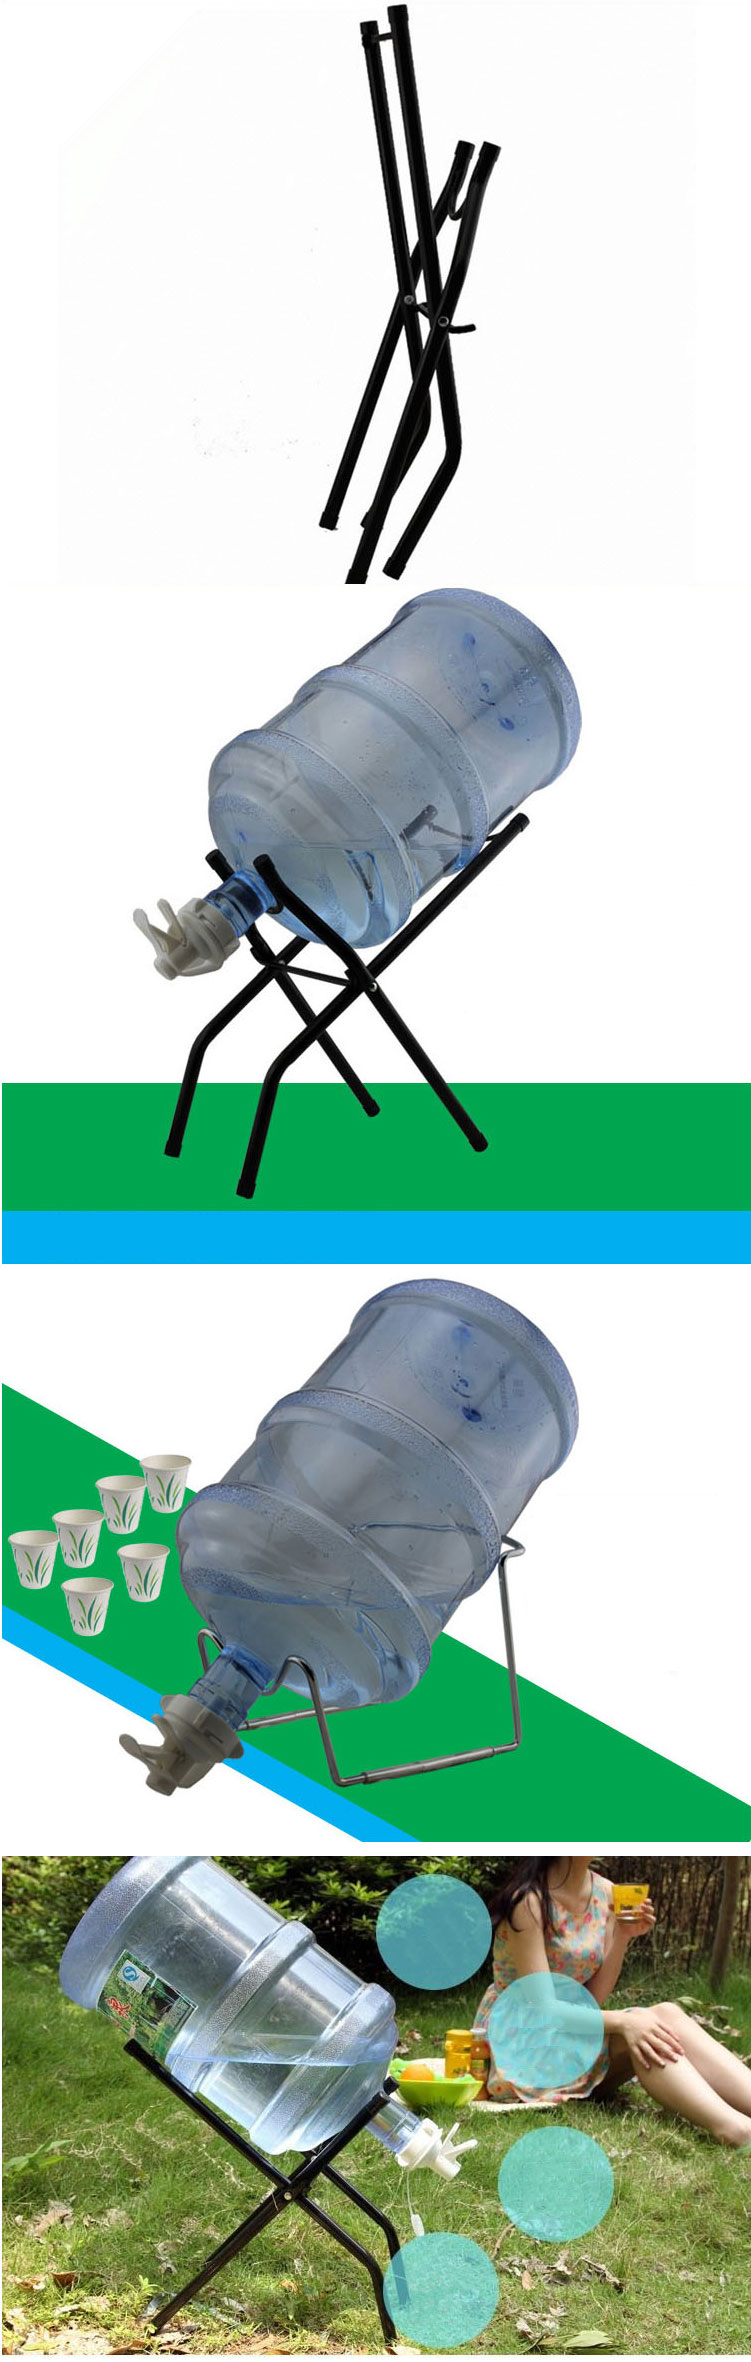 纯净桶装水压水器 吸水器 折叠支架 饮水机压水泵 抽水器矿泉大桶水倒置吸抽 U型折叠钢架 。